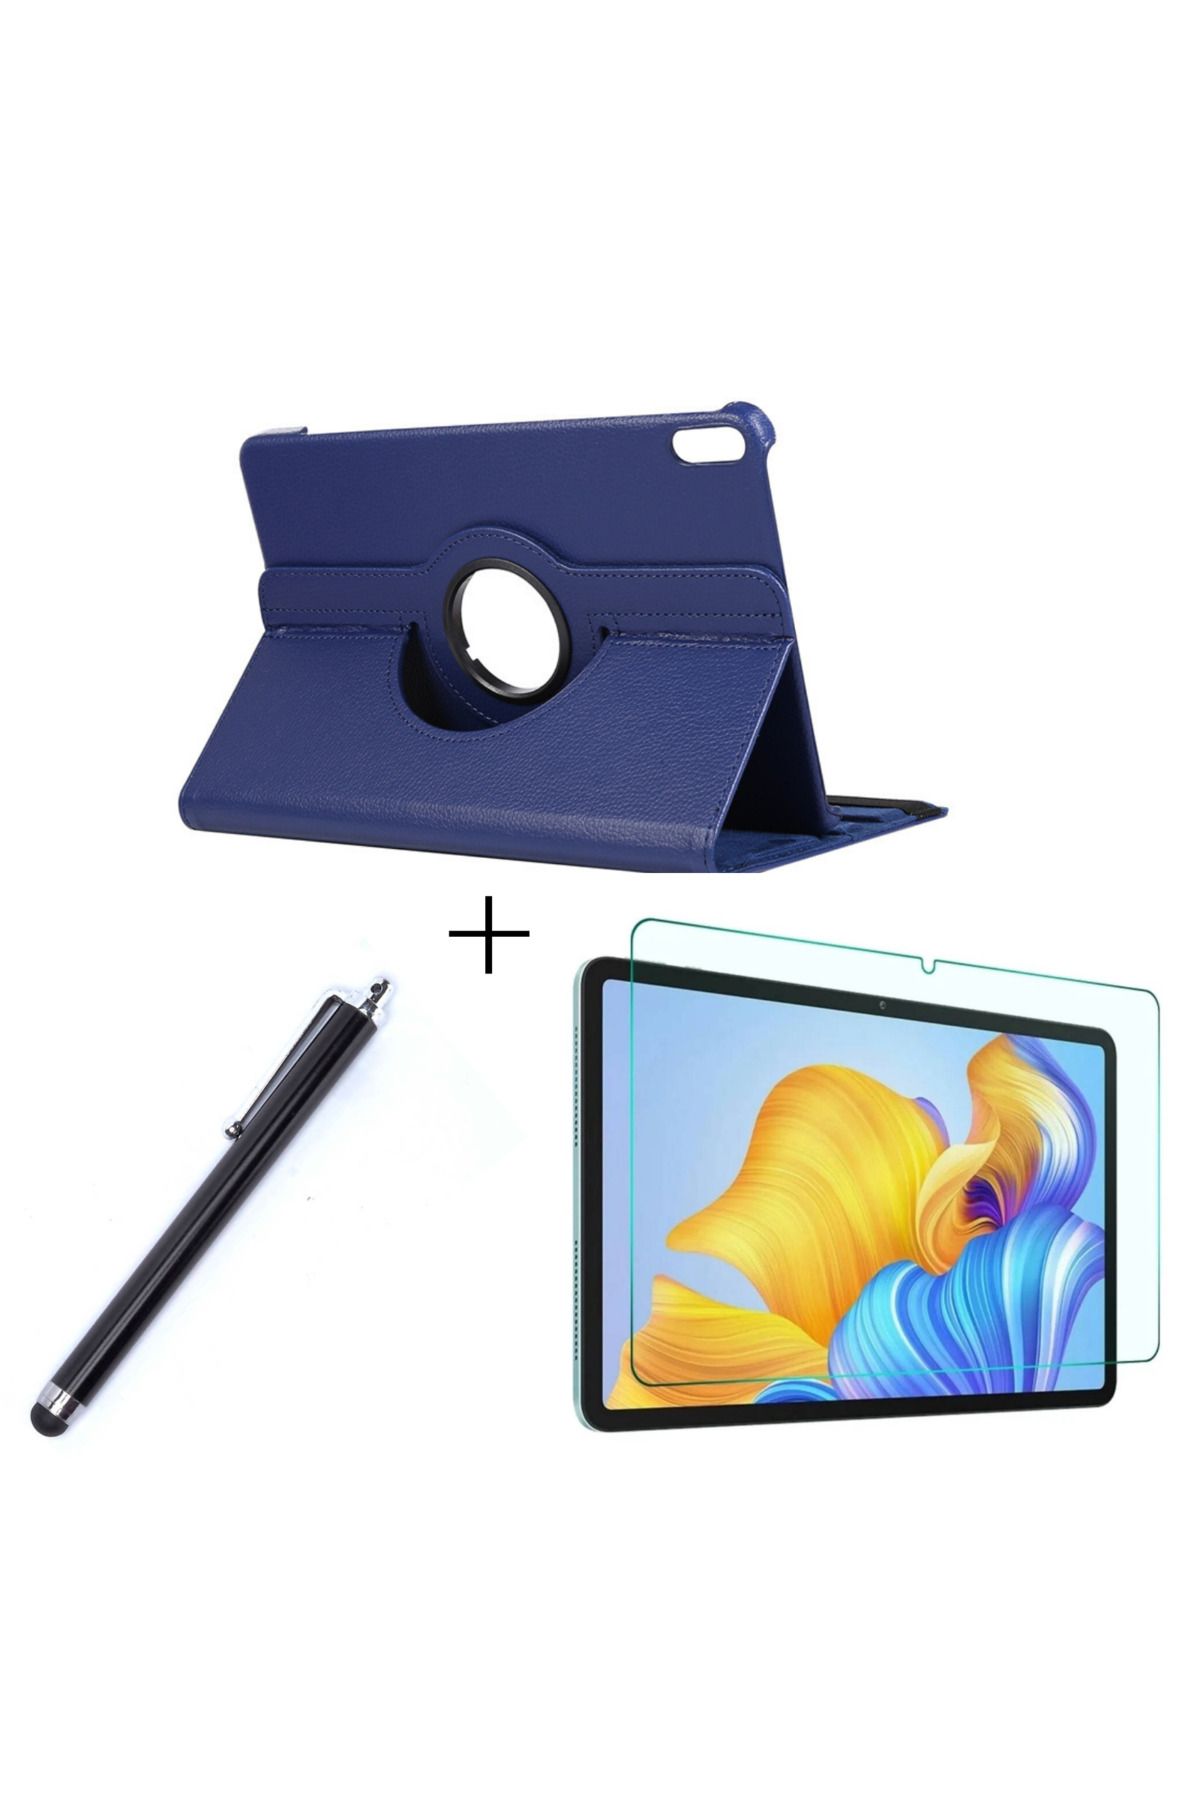 İncisoft Huawei MatePad 11.5 Uyumlu Standlı Kılıf + Nano Kırılmaz Ekran Koruyucu + Tablet Kalemi 3'lü Set